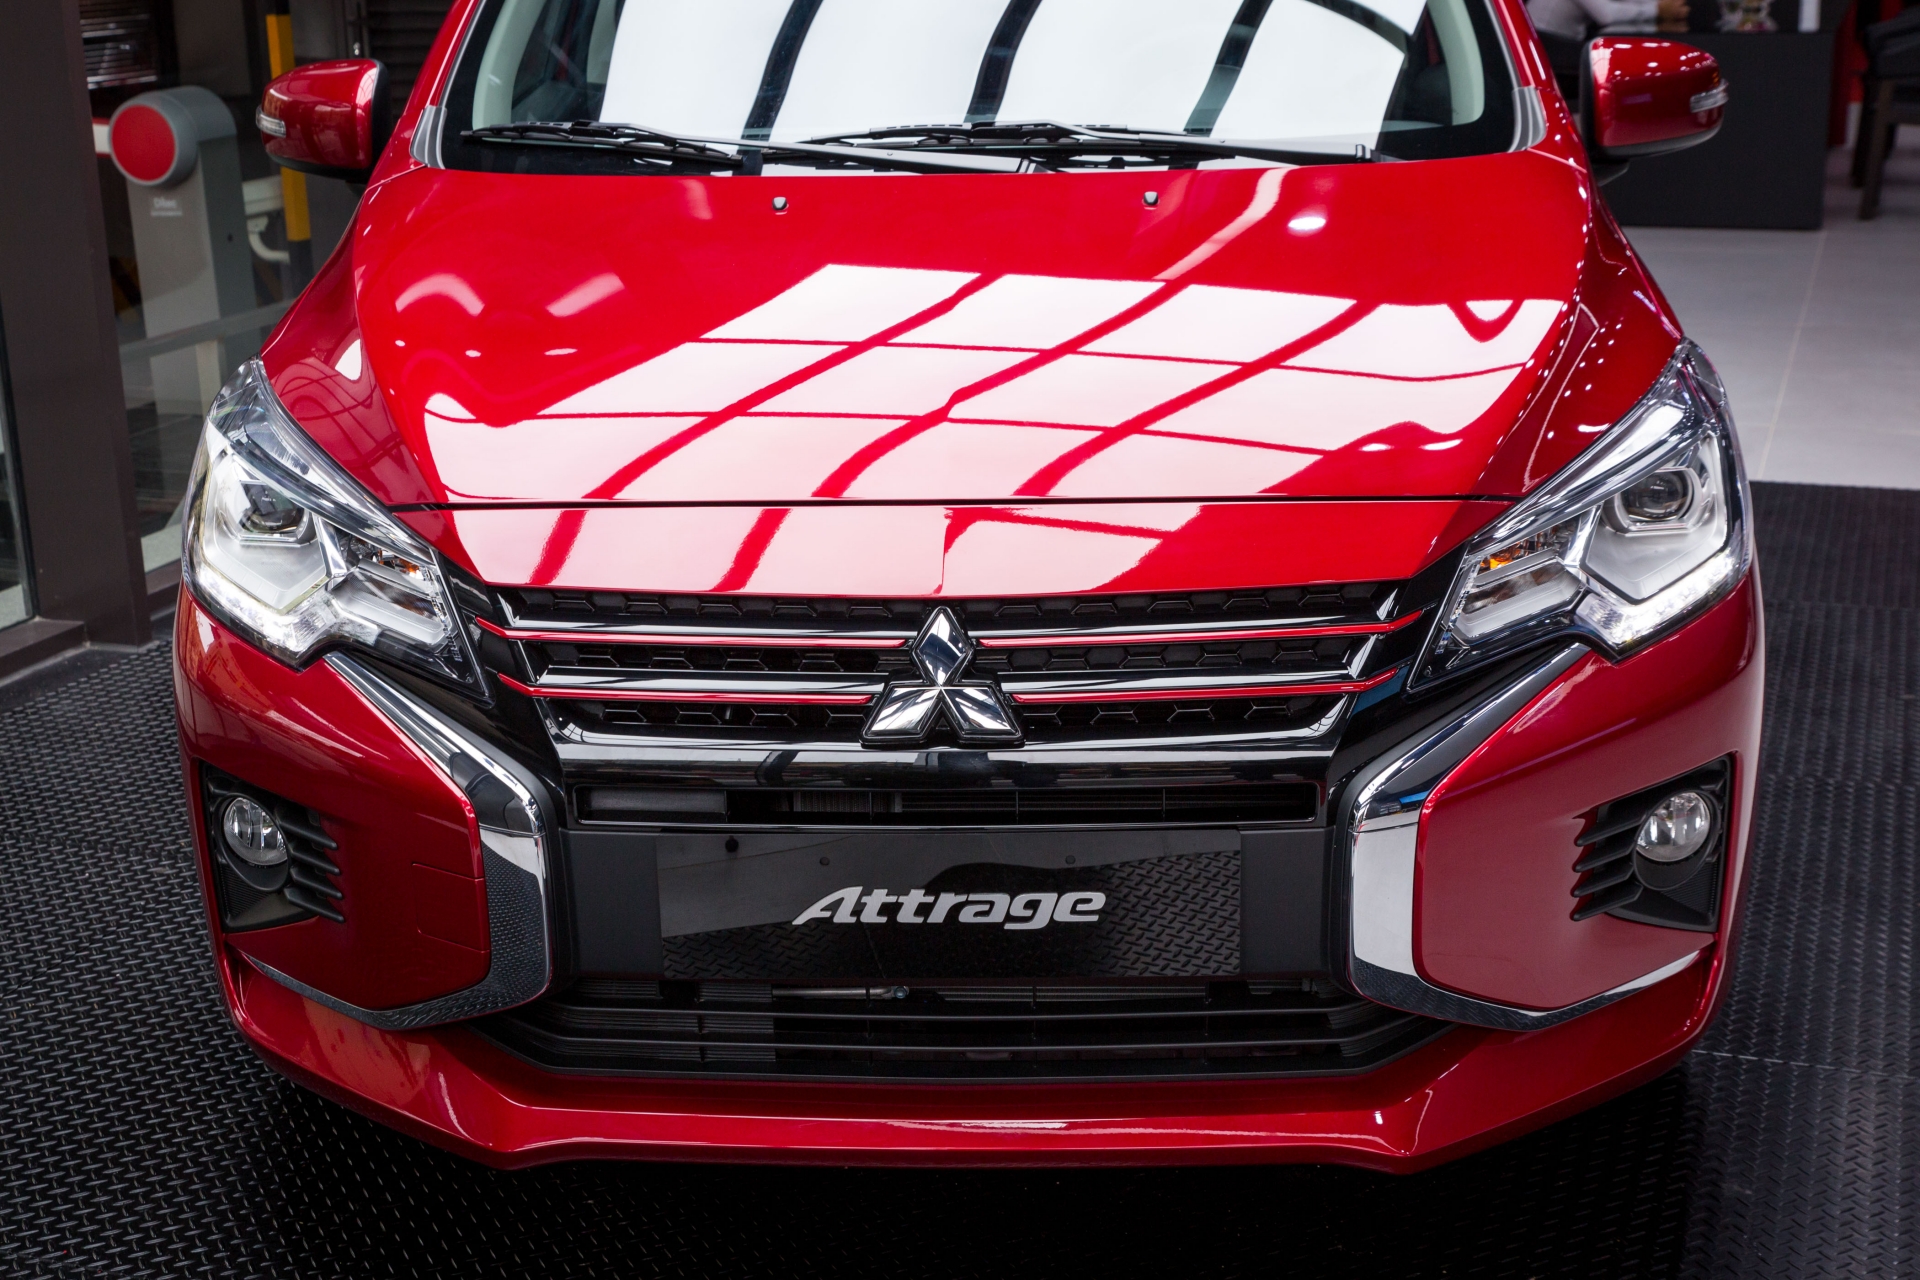 Gần đây Mitsubishi làm mới Attrage bằng việc thêm bản CVT Premium